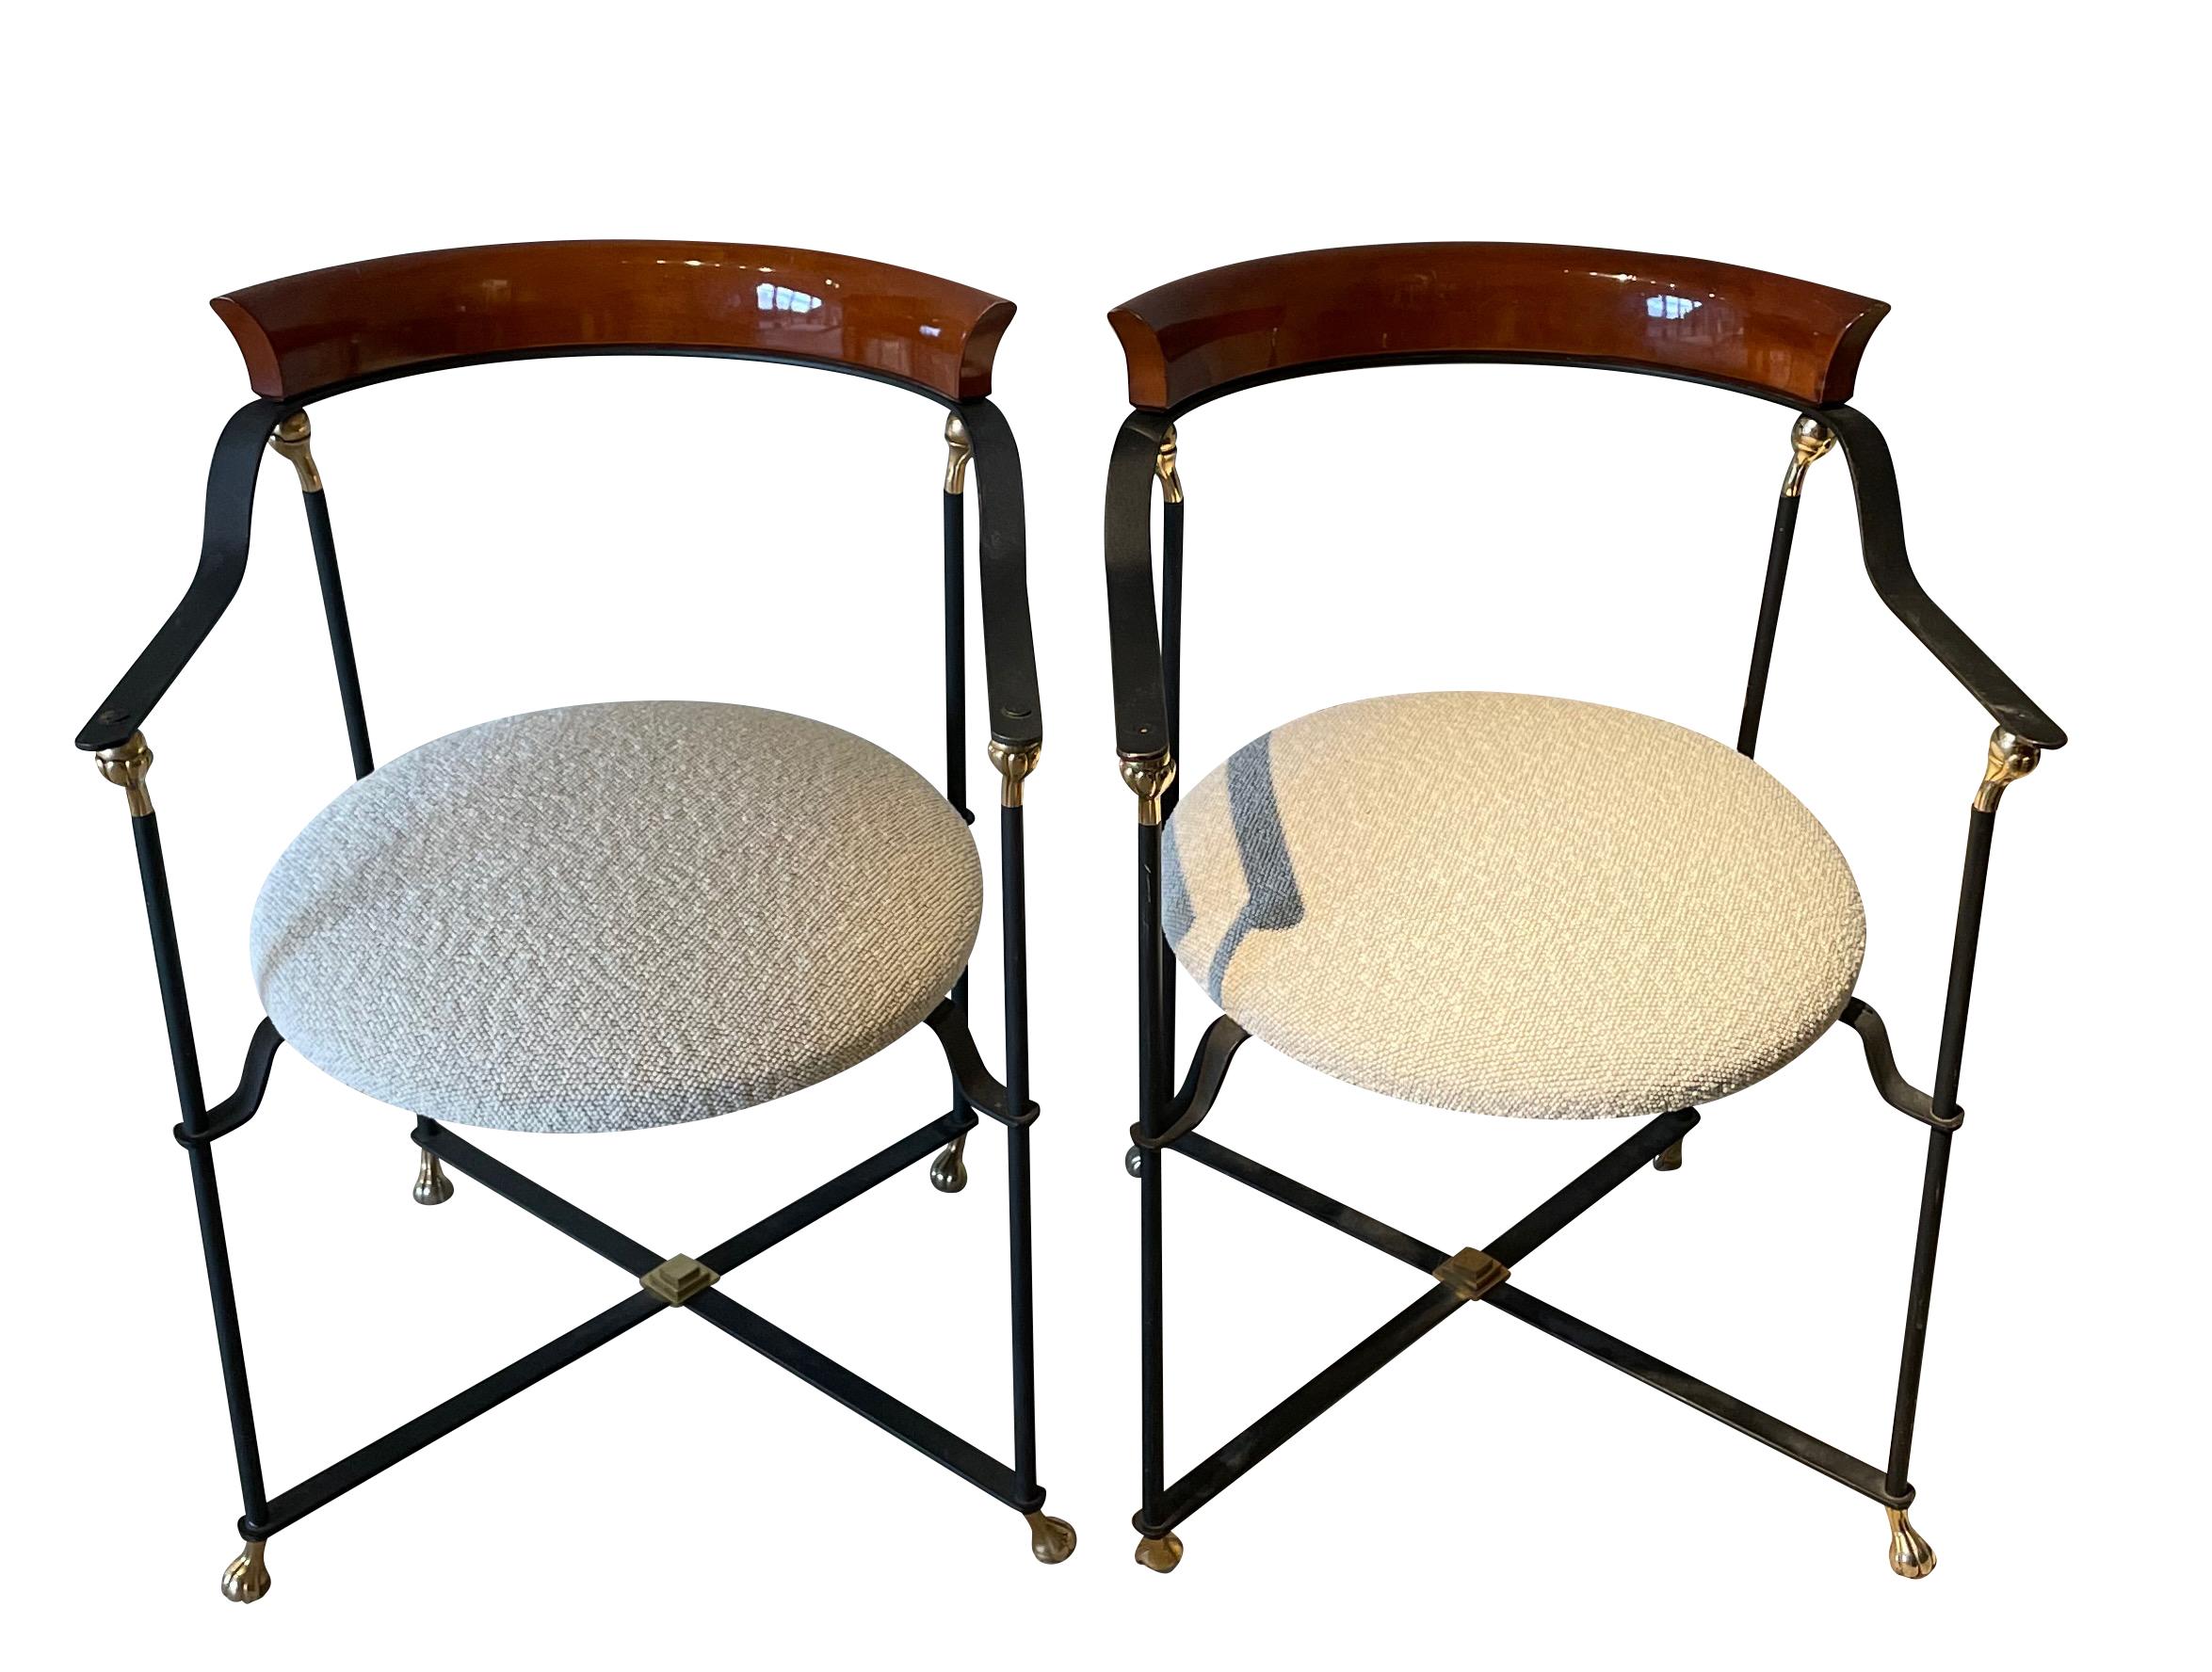 Paire de chaises françaises des années 1970 à structure en métal noir avec dossier en palissandre poli incurvé.
Accents décoratifs en laiton.
X base stretcher.
L'assise a été récemment retapissée en tissu bouclé.
Peut être utilisé comme chaise de